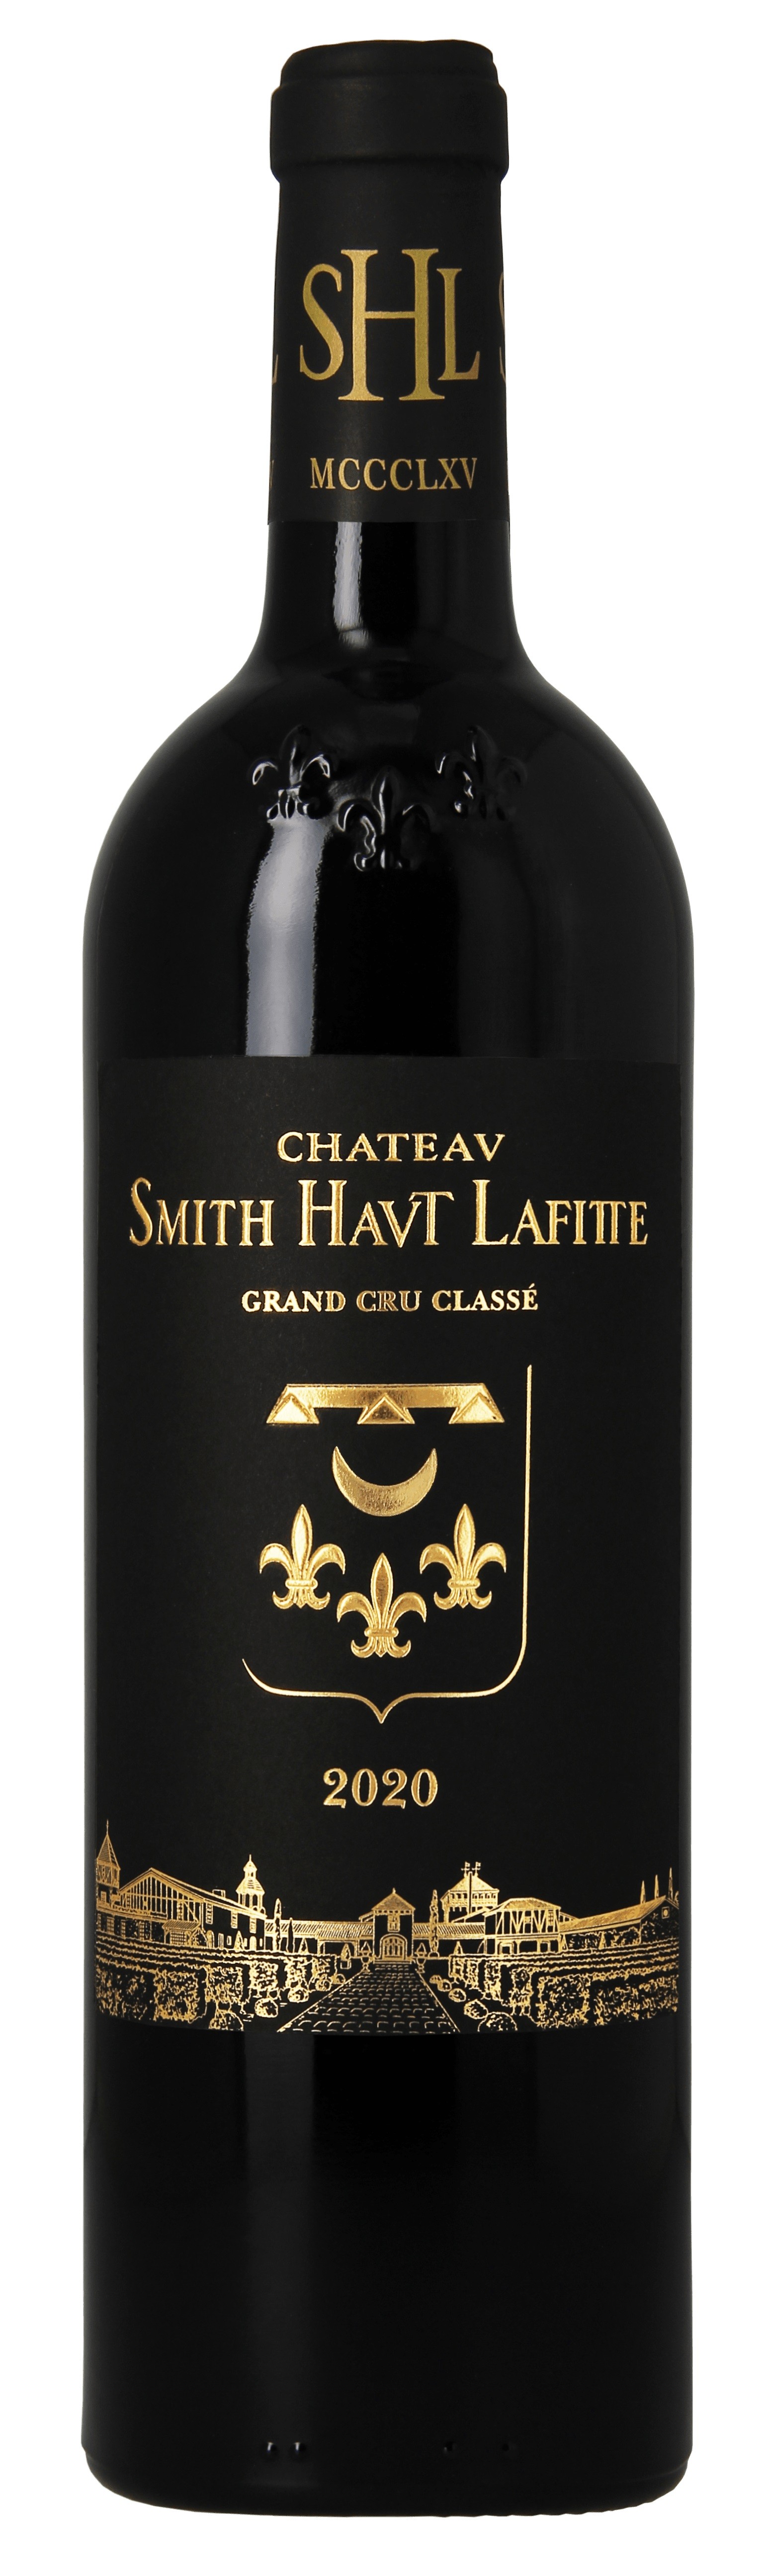 22.6.2021 - Chateau Smith Haut Lafitte 2020 red, Pessac-Léognan - KAMPAŇ EN PRIMEUR